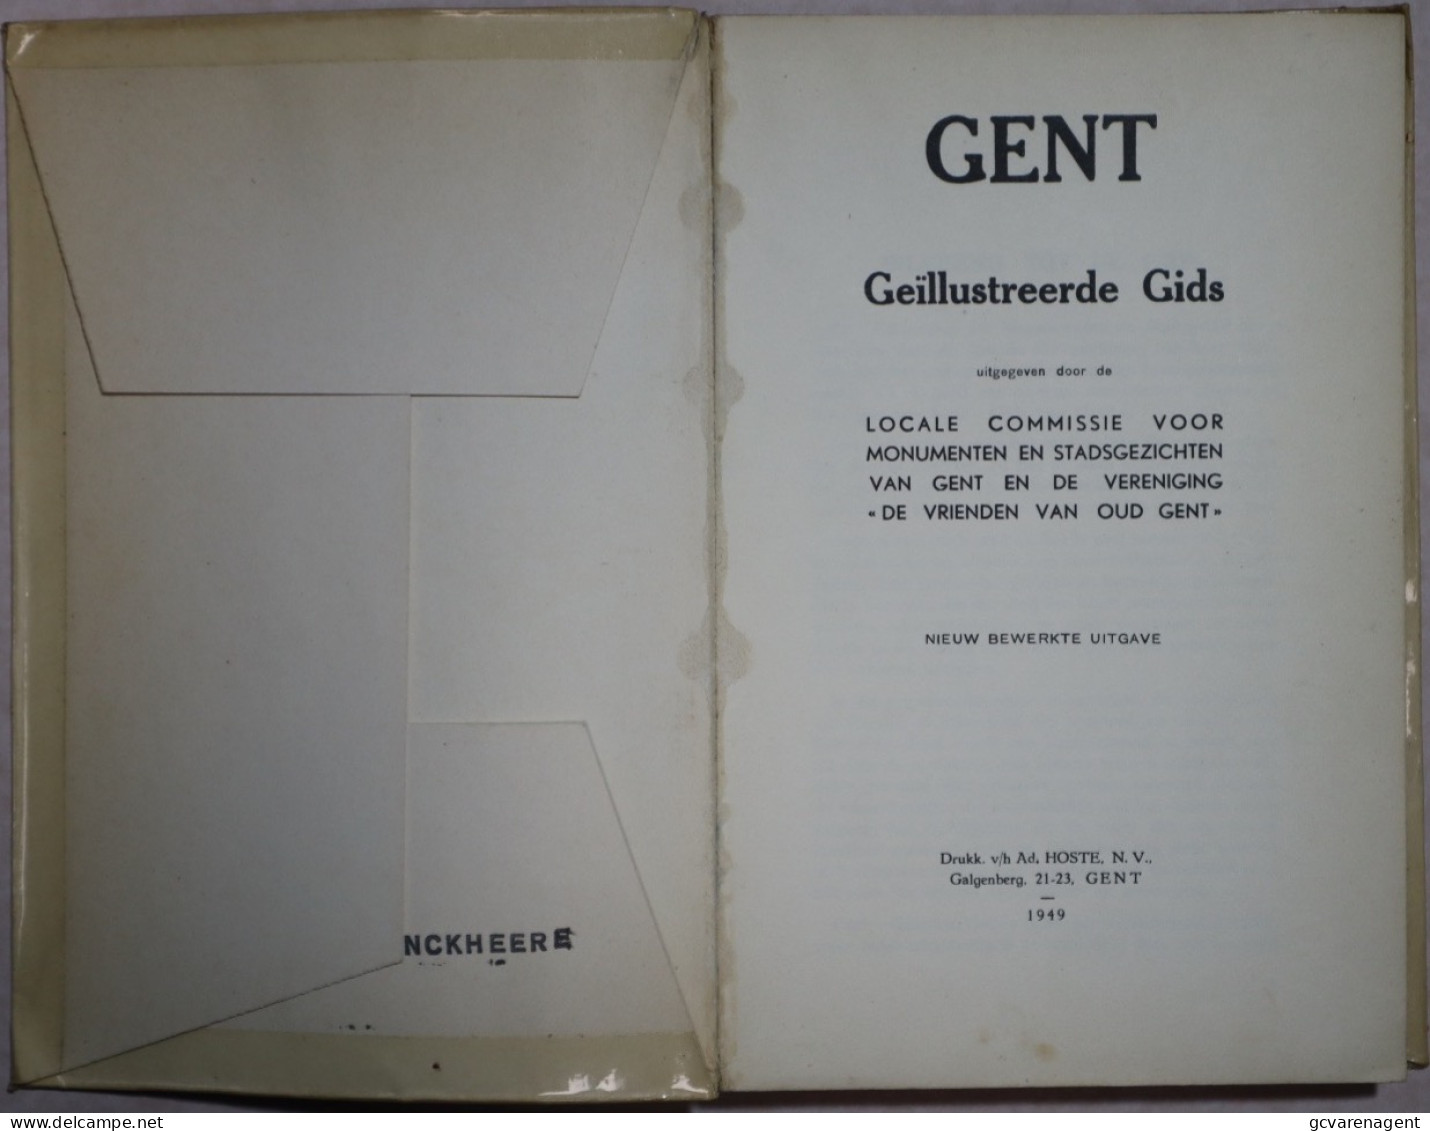 GENT 1949 GEÏLLUSTREEDE GIDS + BIJLAGE = 192 BLZ = 84 AFBEELDINGEN = GOEDE STAAT 220 X 115 MM. ZIE AFBEELDINGEN - History